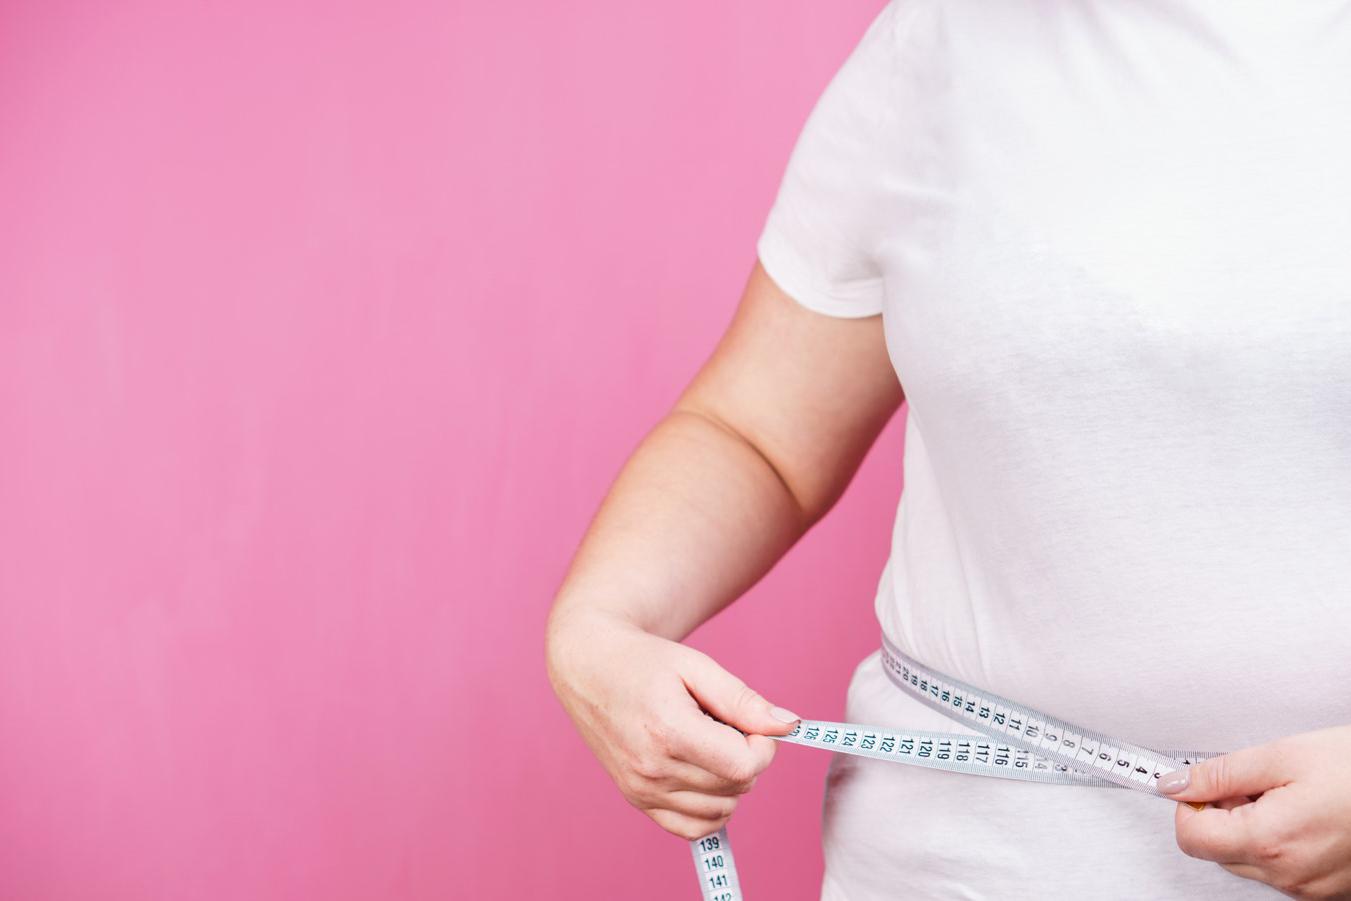 Из-за высокой калорийности и жирности сала его чрезмерное употребление может способствовать набору веса и ожирению